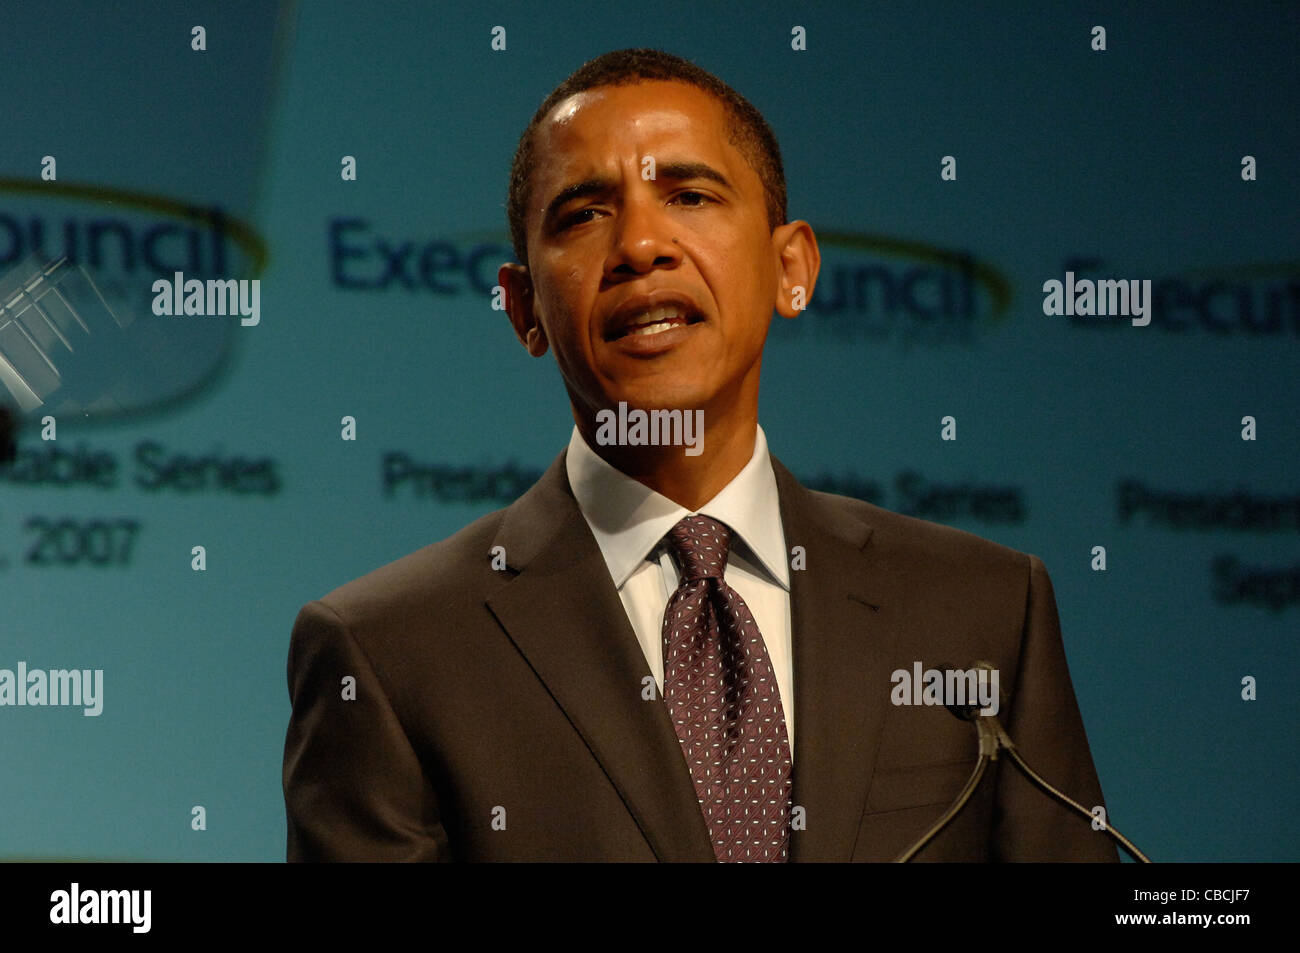 Candidat présidentiel sénateur de l'Illinois Barack Obama parle de l'économie Banque D'Images